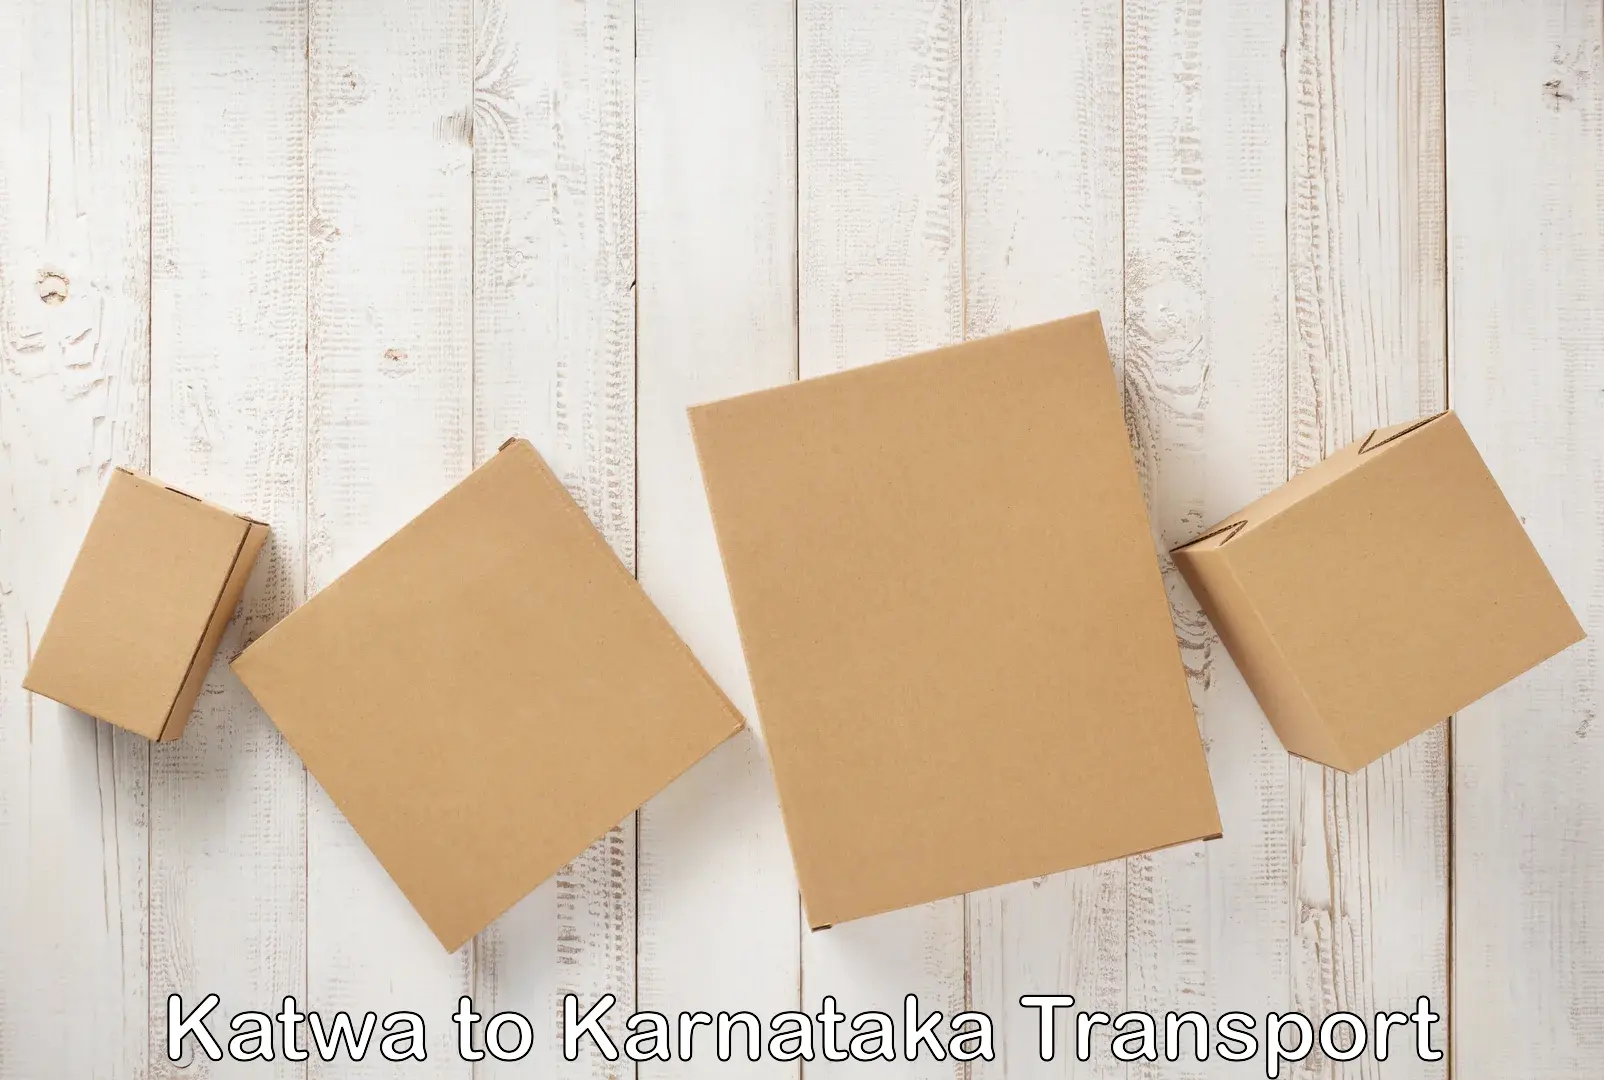 Transportation services Katwa to Yenepoya Mangalore